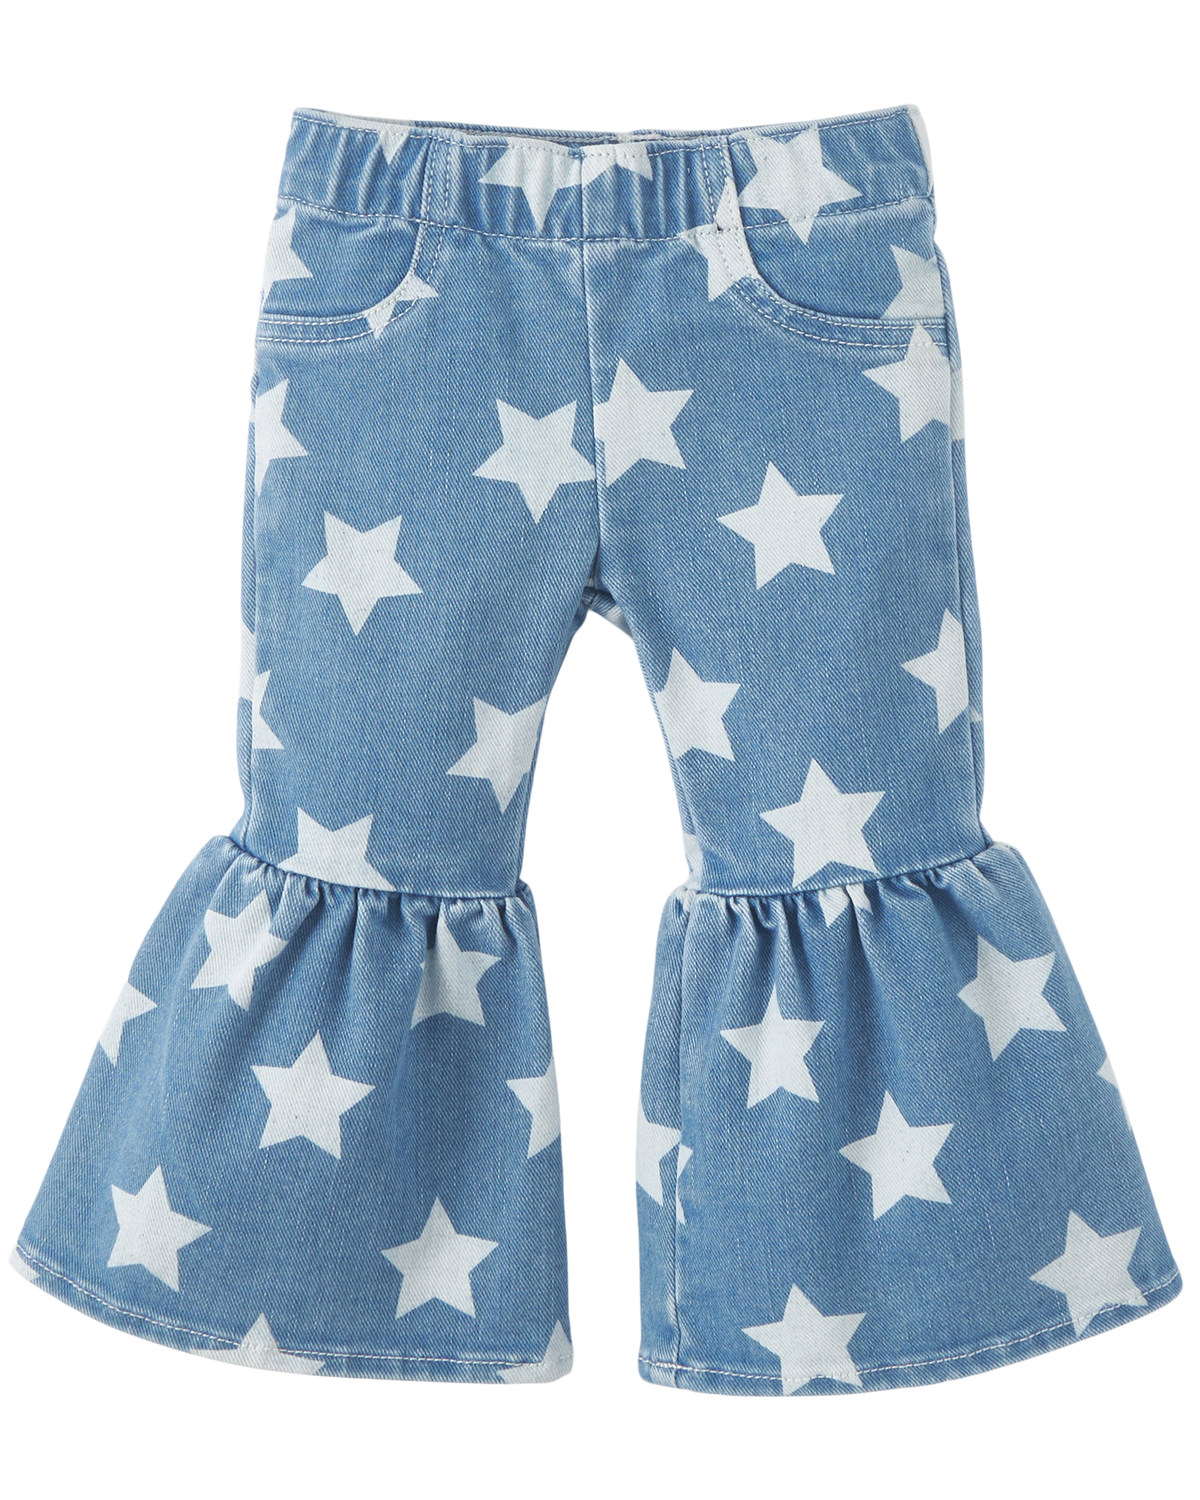 Wrangler Toddler Girls' Star Print Flare Jeans